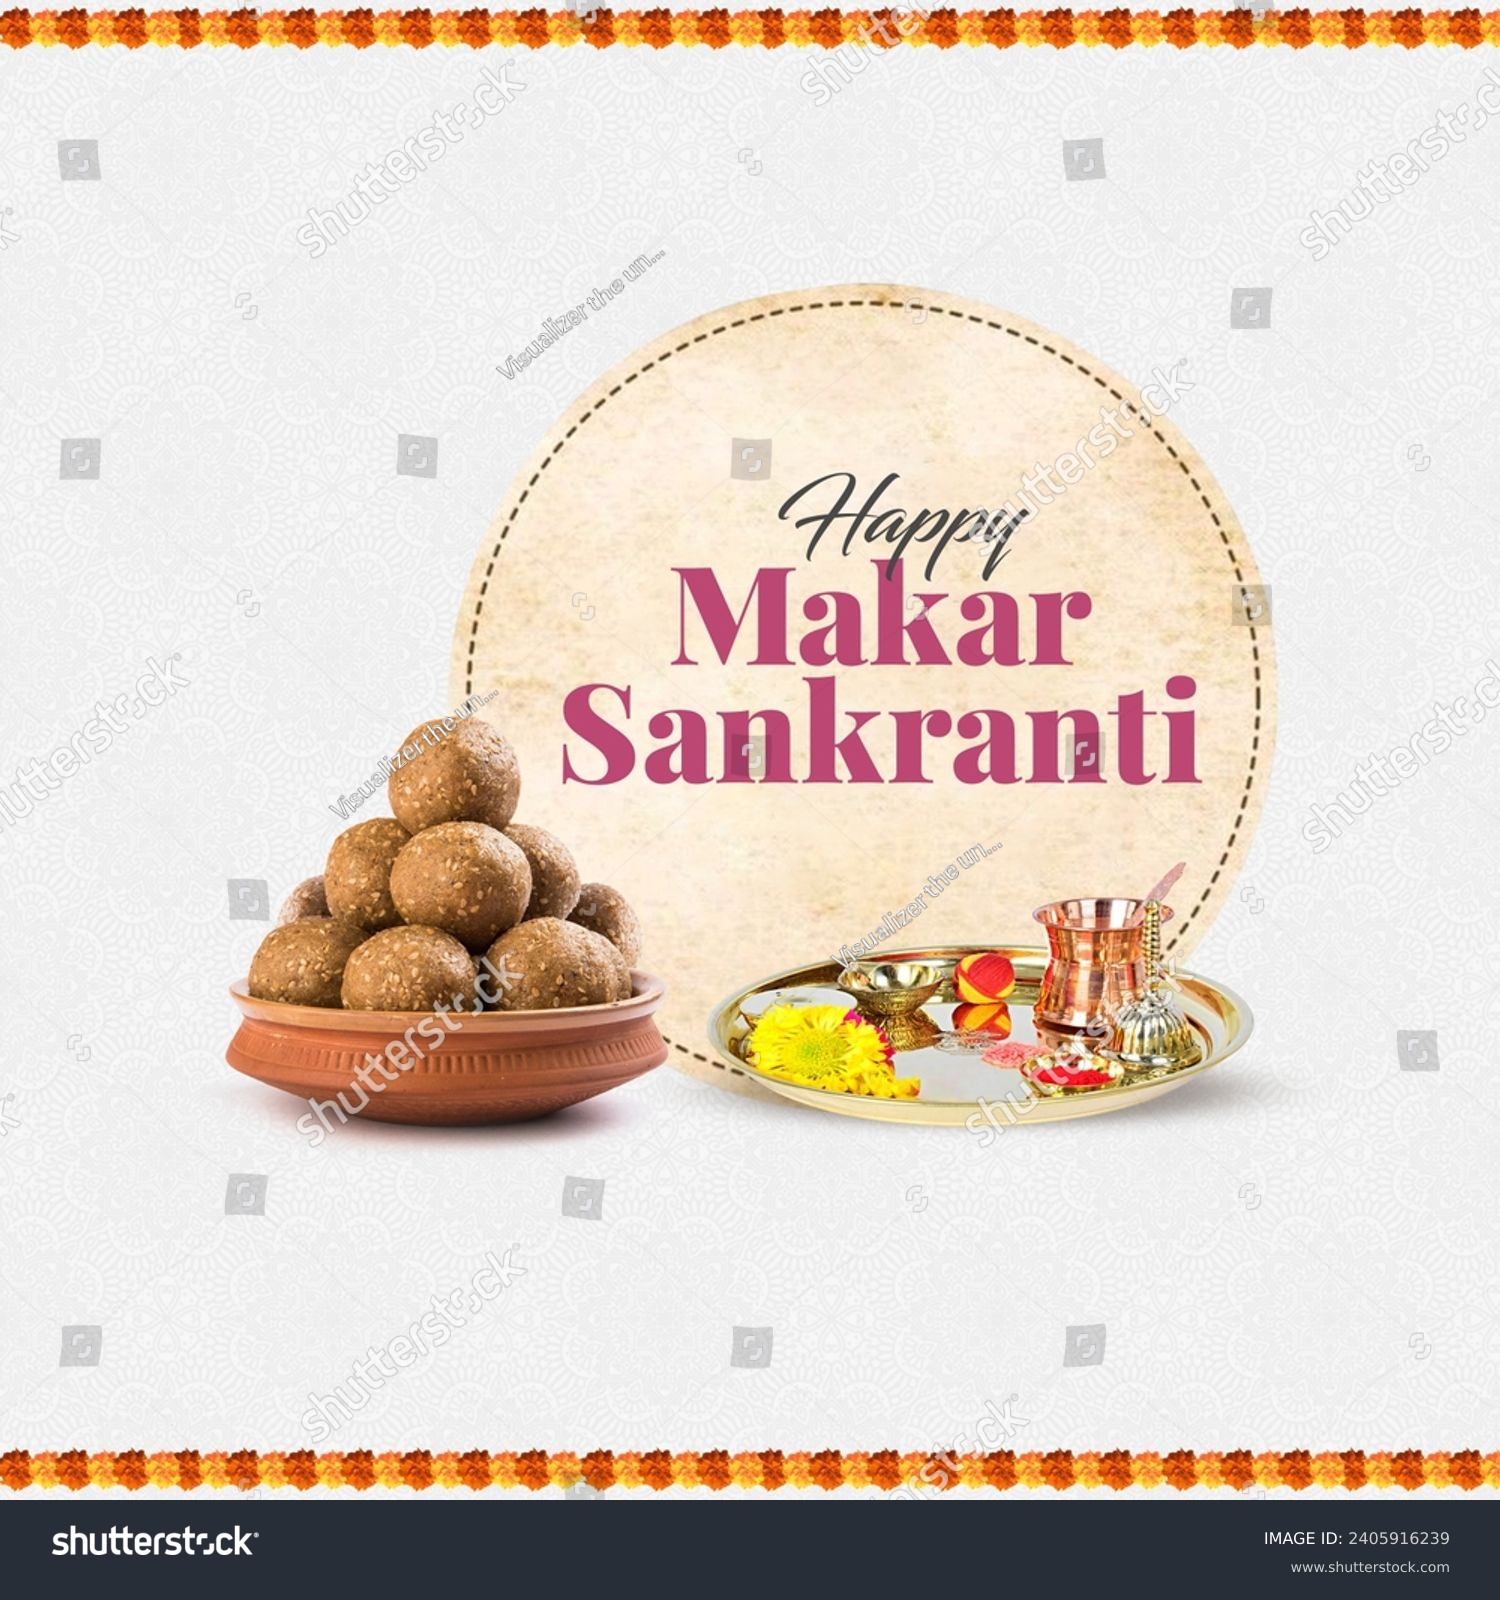 Happy Makar Sankranti
Sankranti tilgud laddu bowl and Puja thali #2405916239